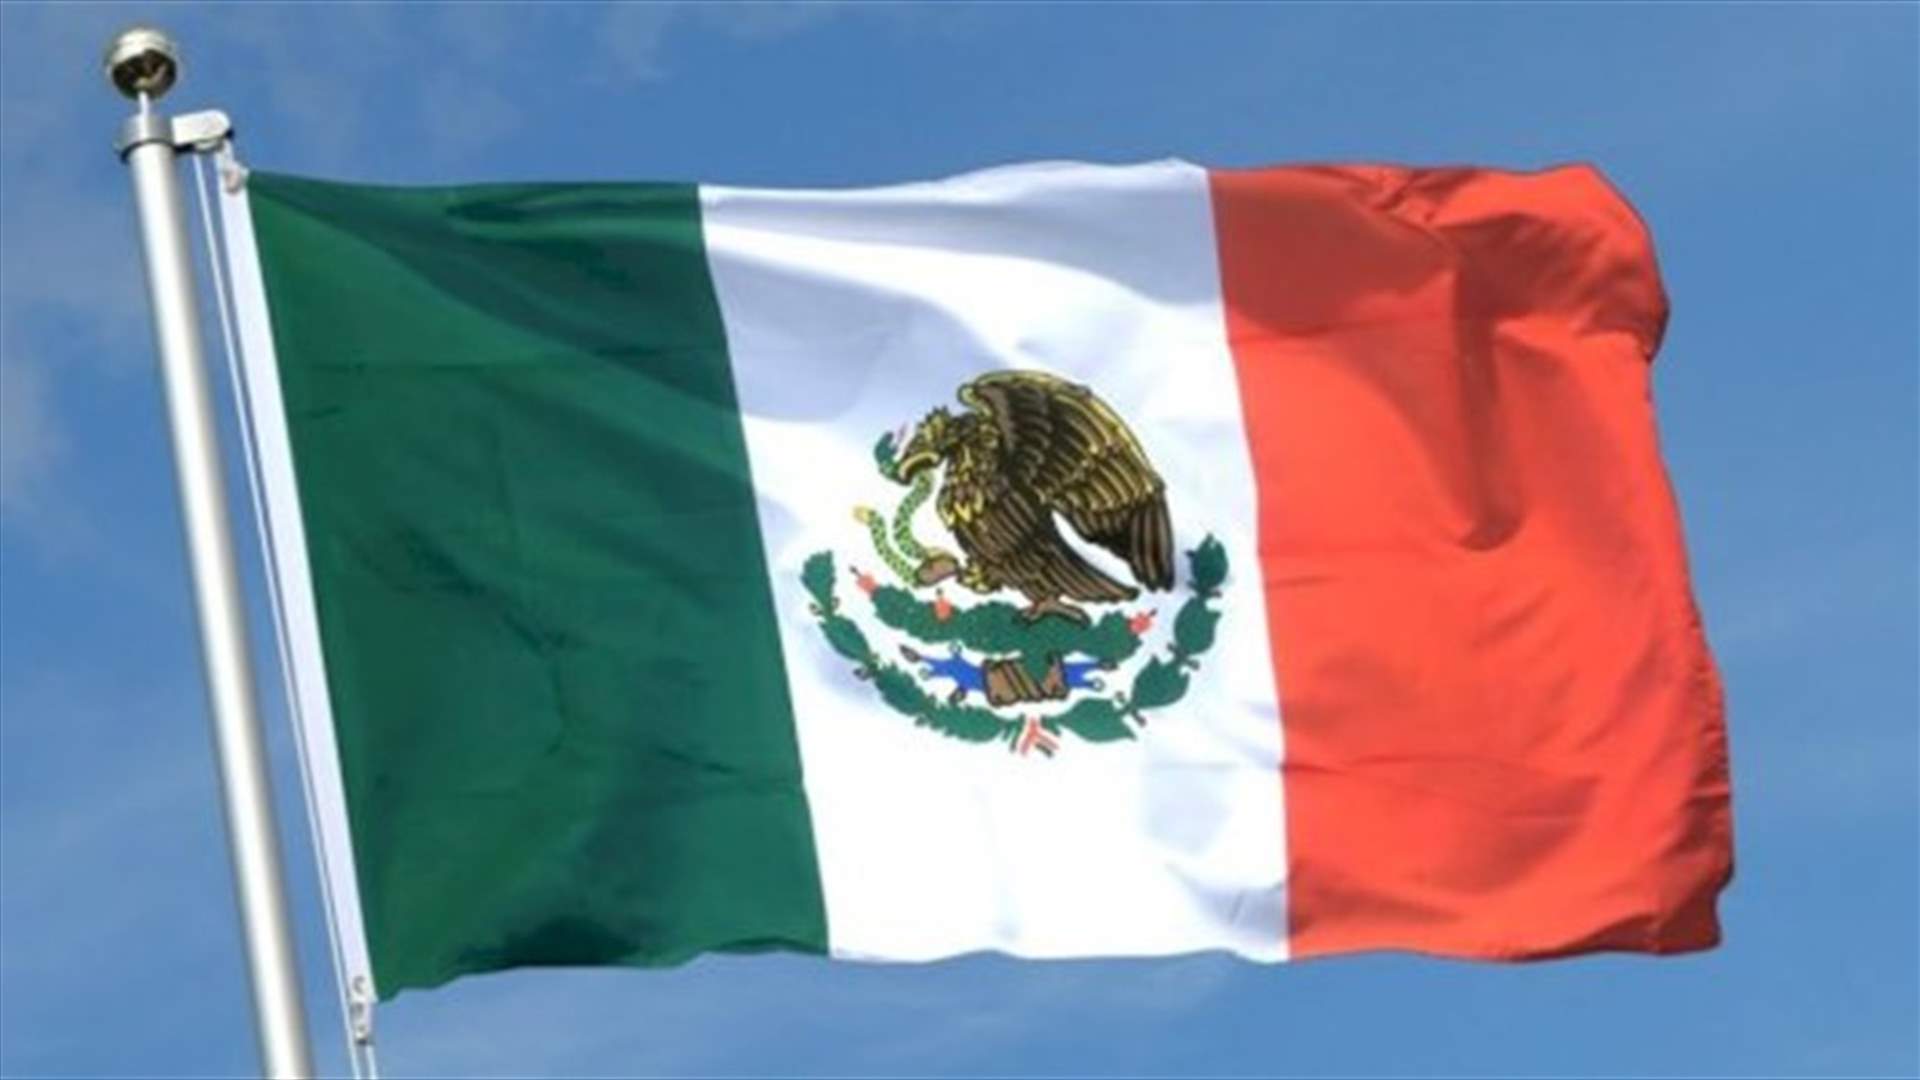 المكسيك ستتشدد في مطالبة الولايات المتحدة بتسليمها مشتبهًا بقتله صحافيًا